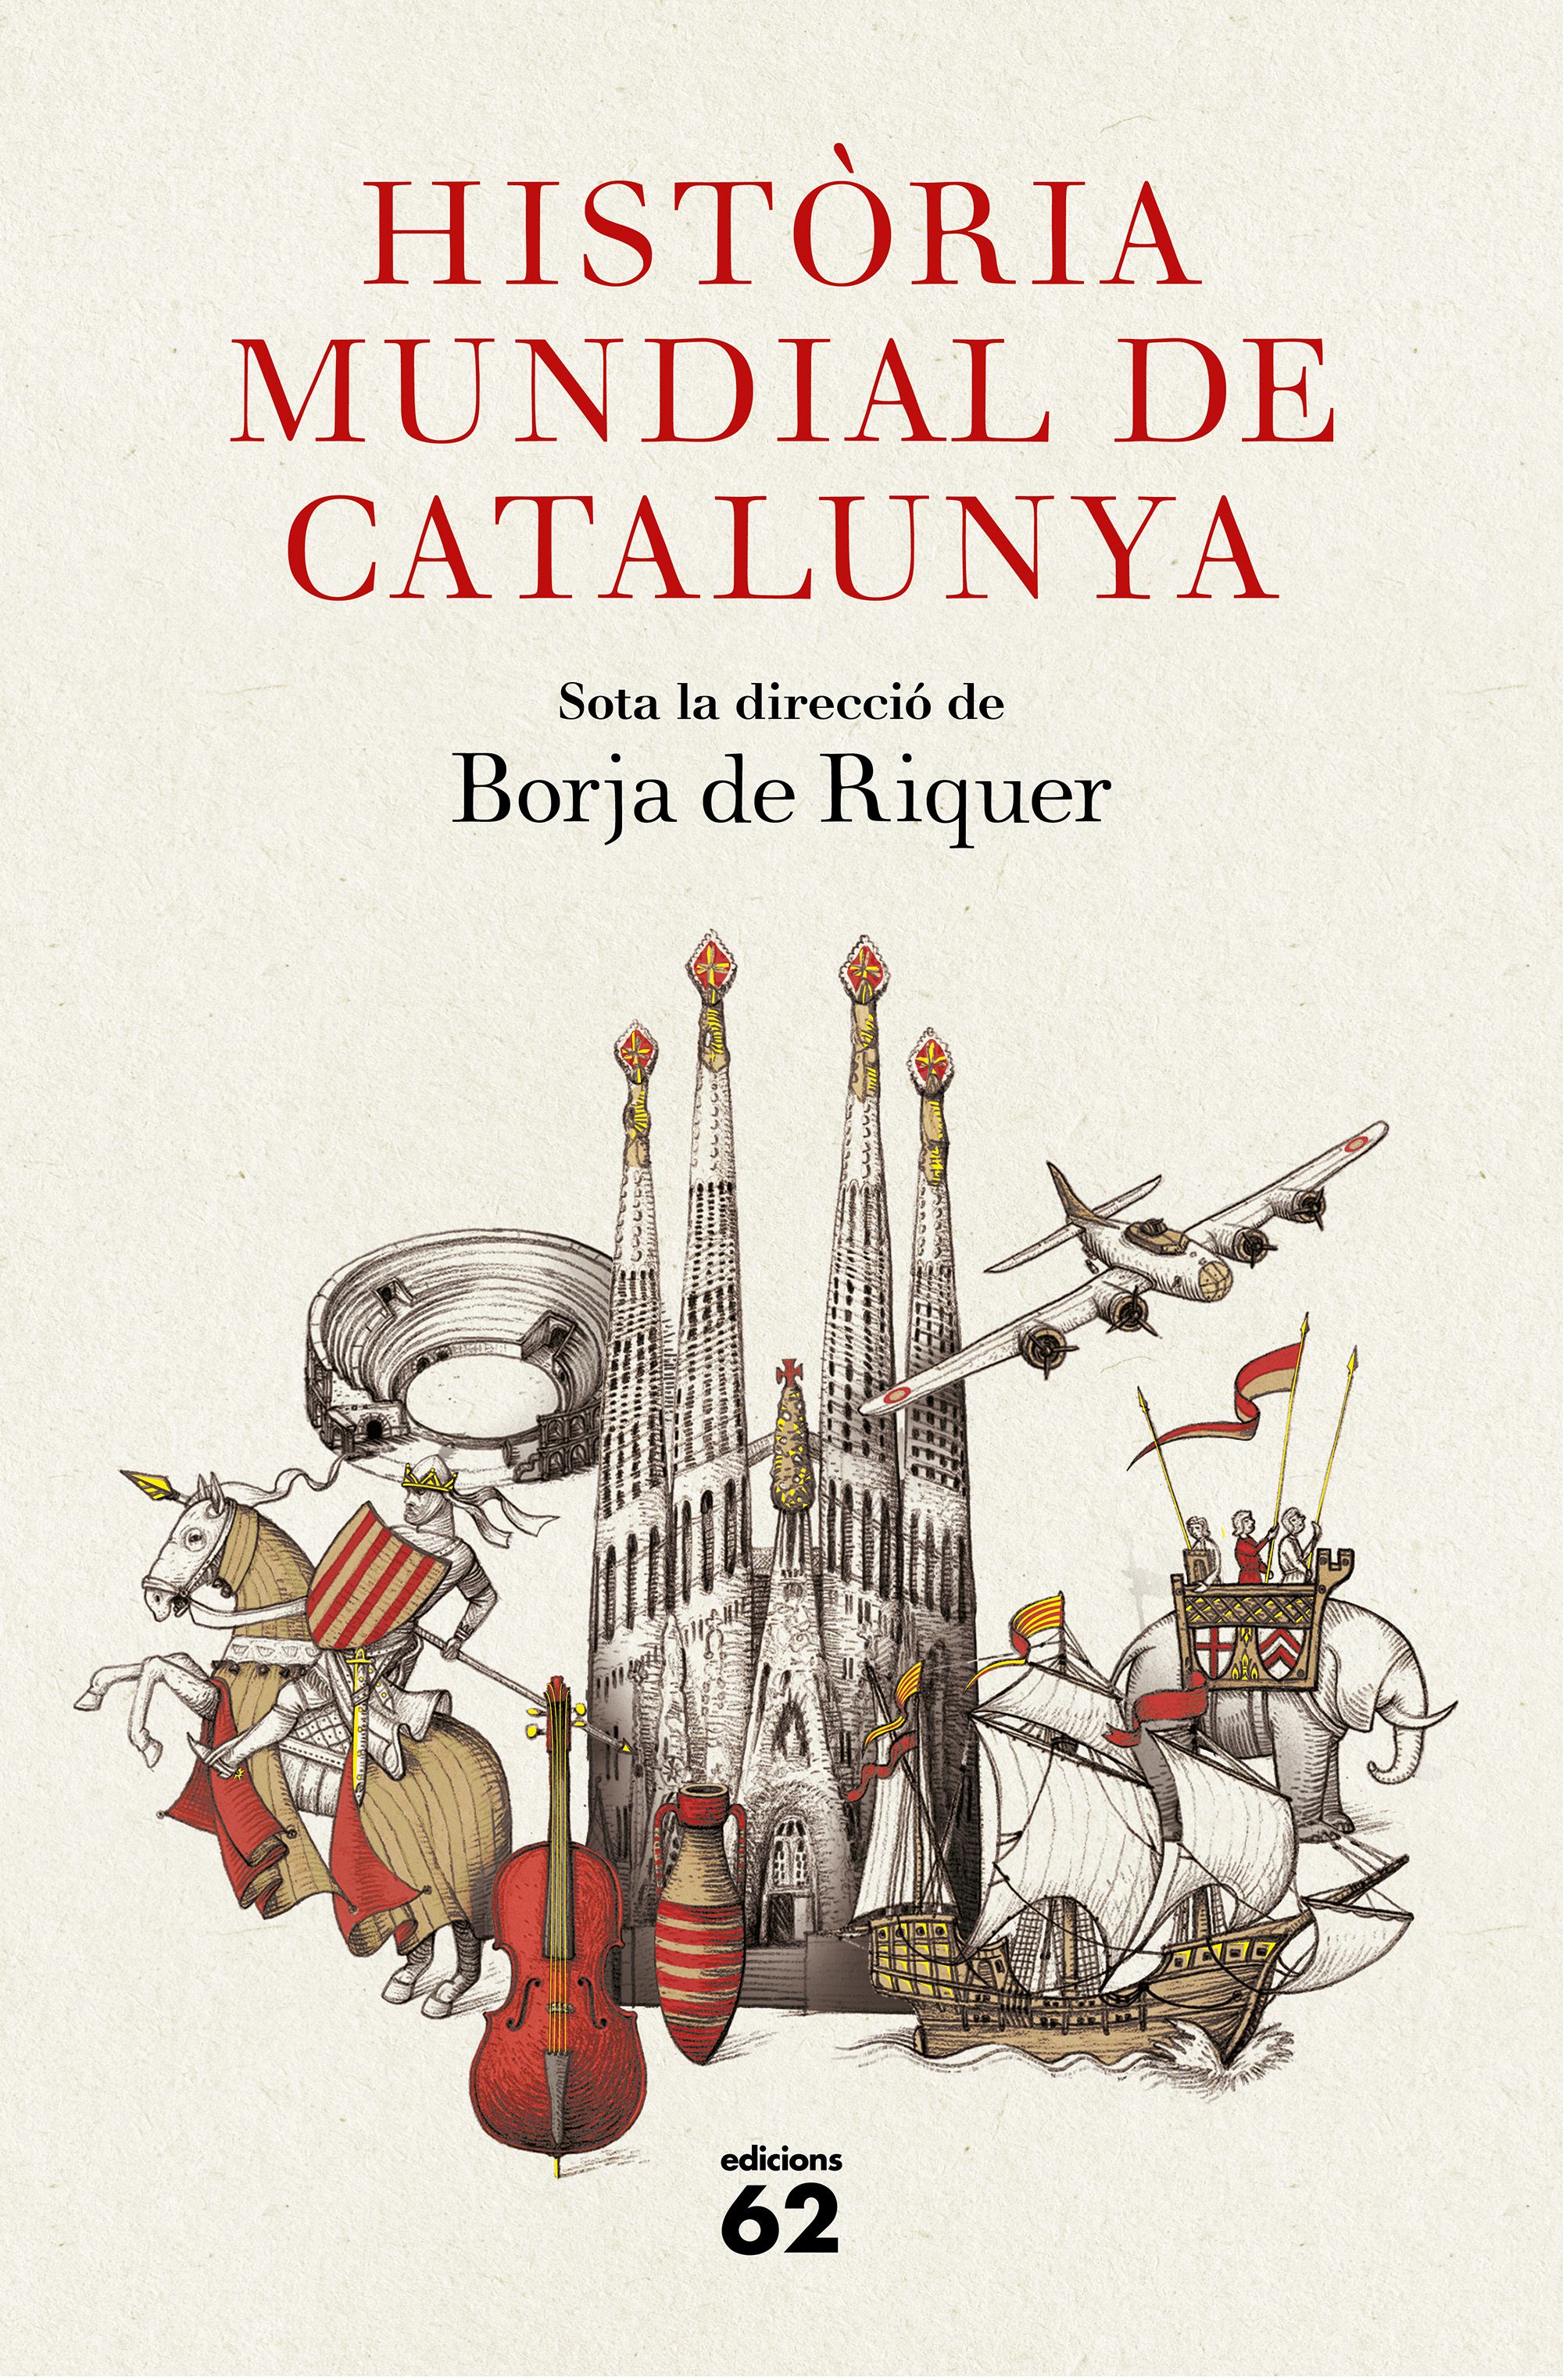 'Història mundial de Catalunya': El país, desde los pequeños hechos